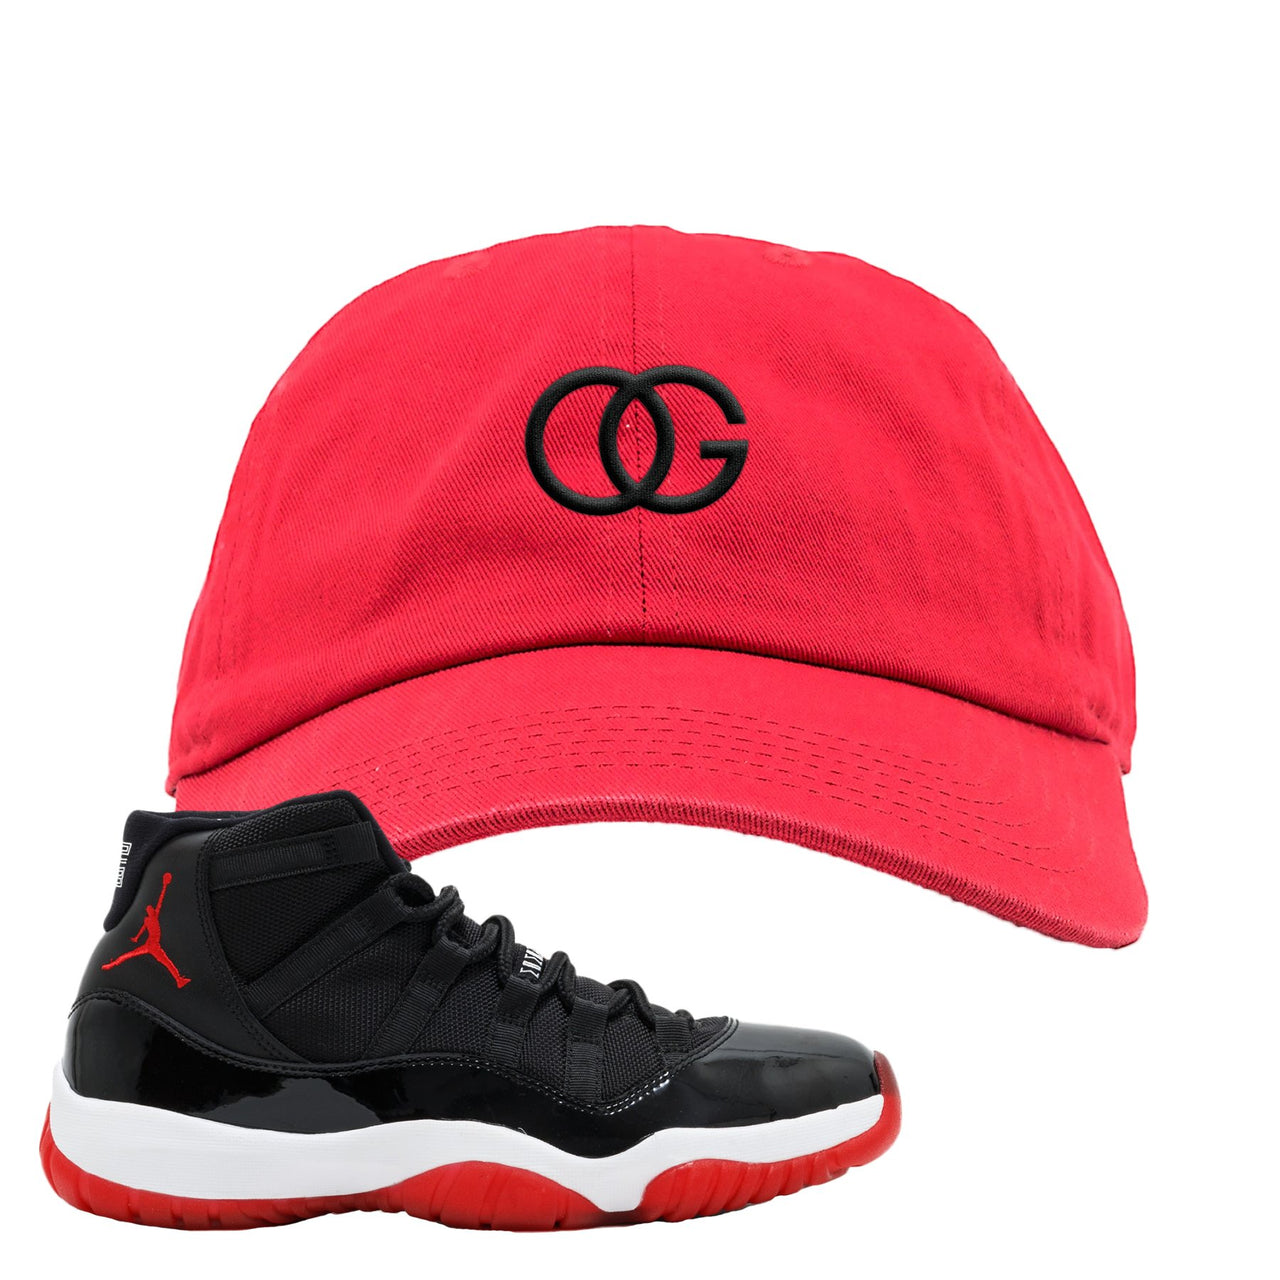 Jordan 11 Bred OG Red Sneaker Hook Up Dad Hat